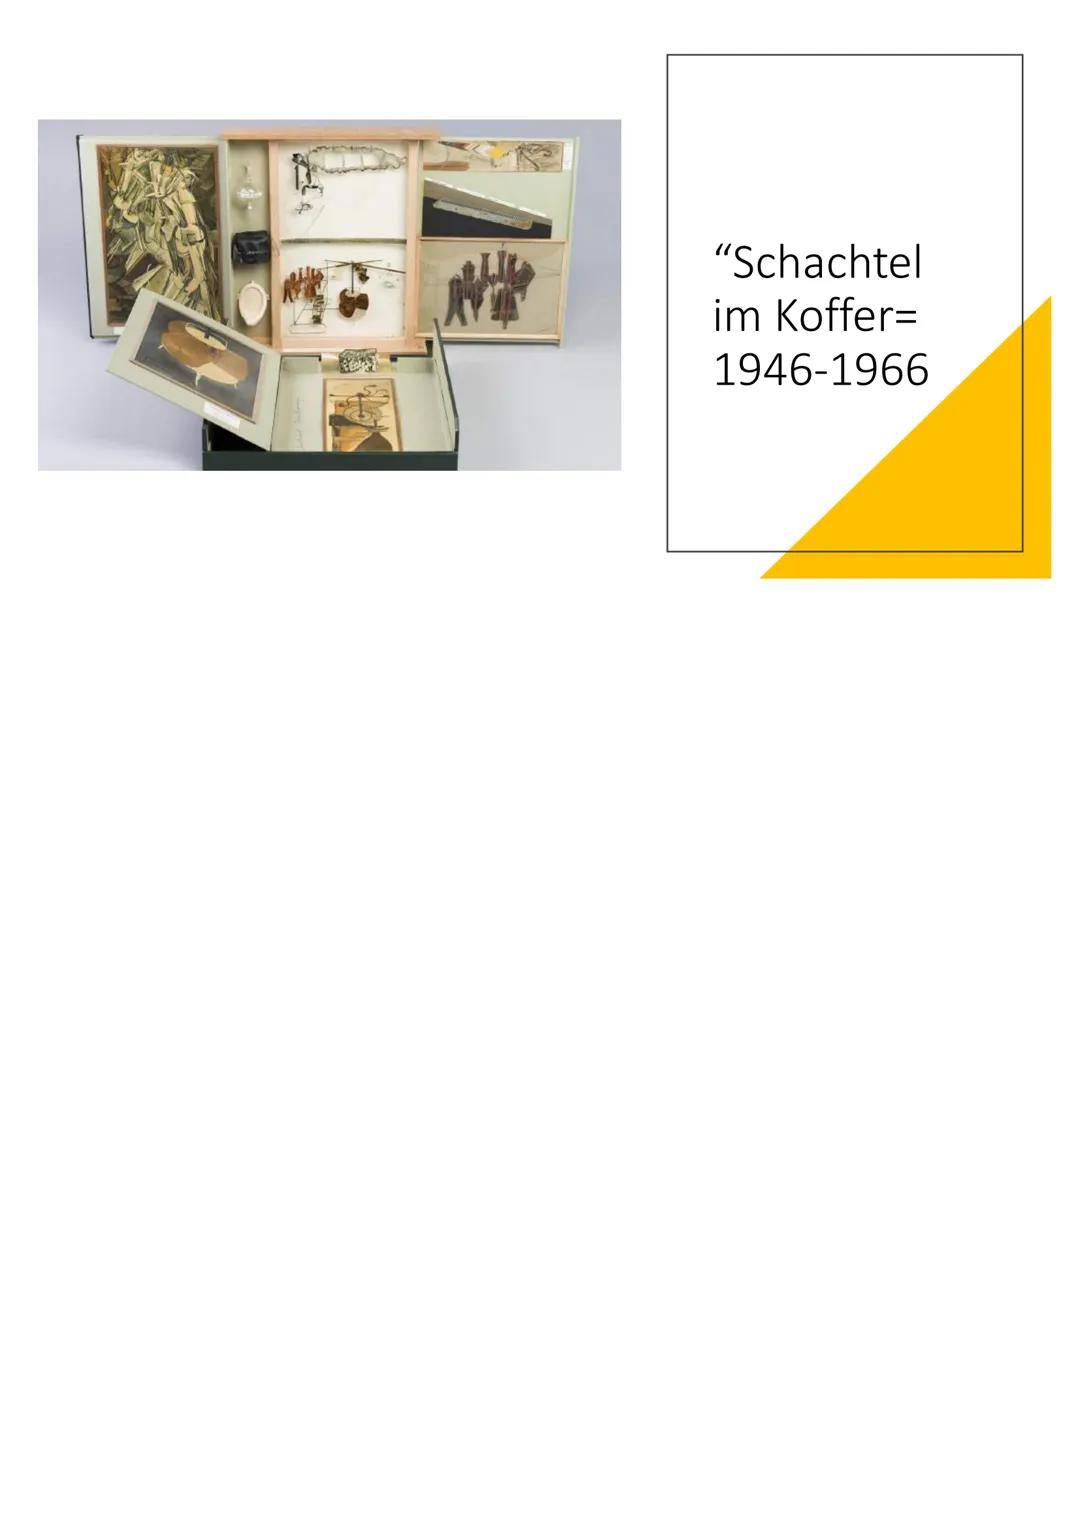 Der Dadaismus und Marcel
Duchamp Inhalt
• Dadaismus
Dada-Bewegung
- Dada-Kunststil
- "Ready-Mades"
• Marcel Duchamp
- Biographie und künstle